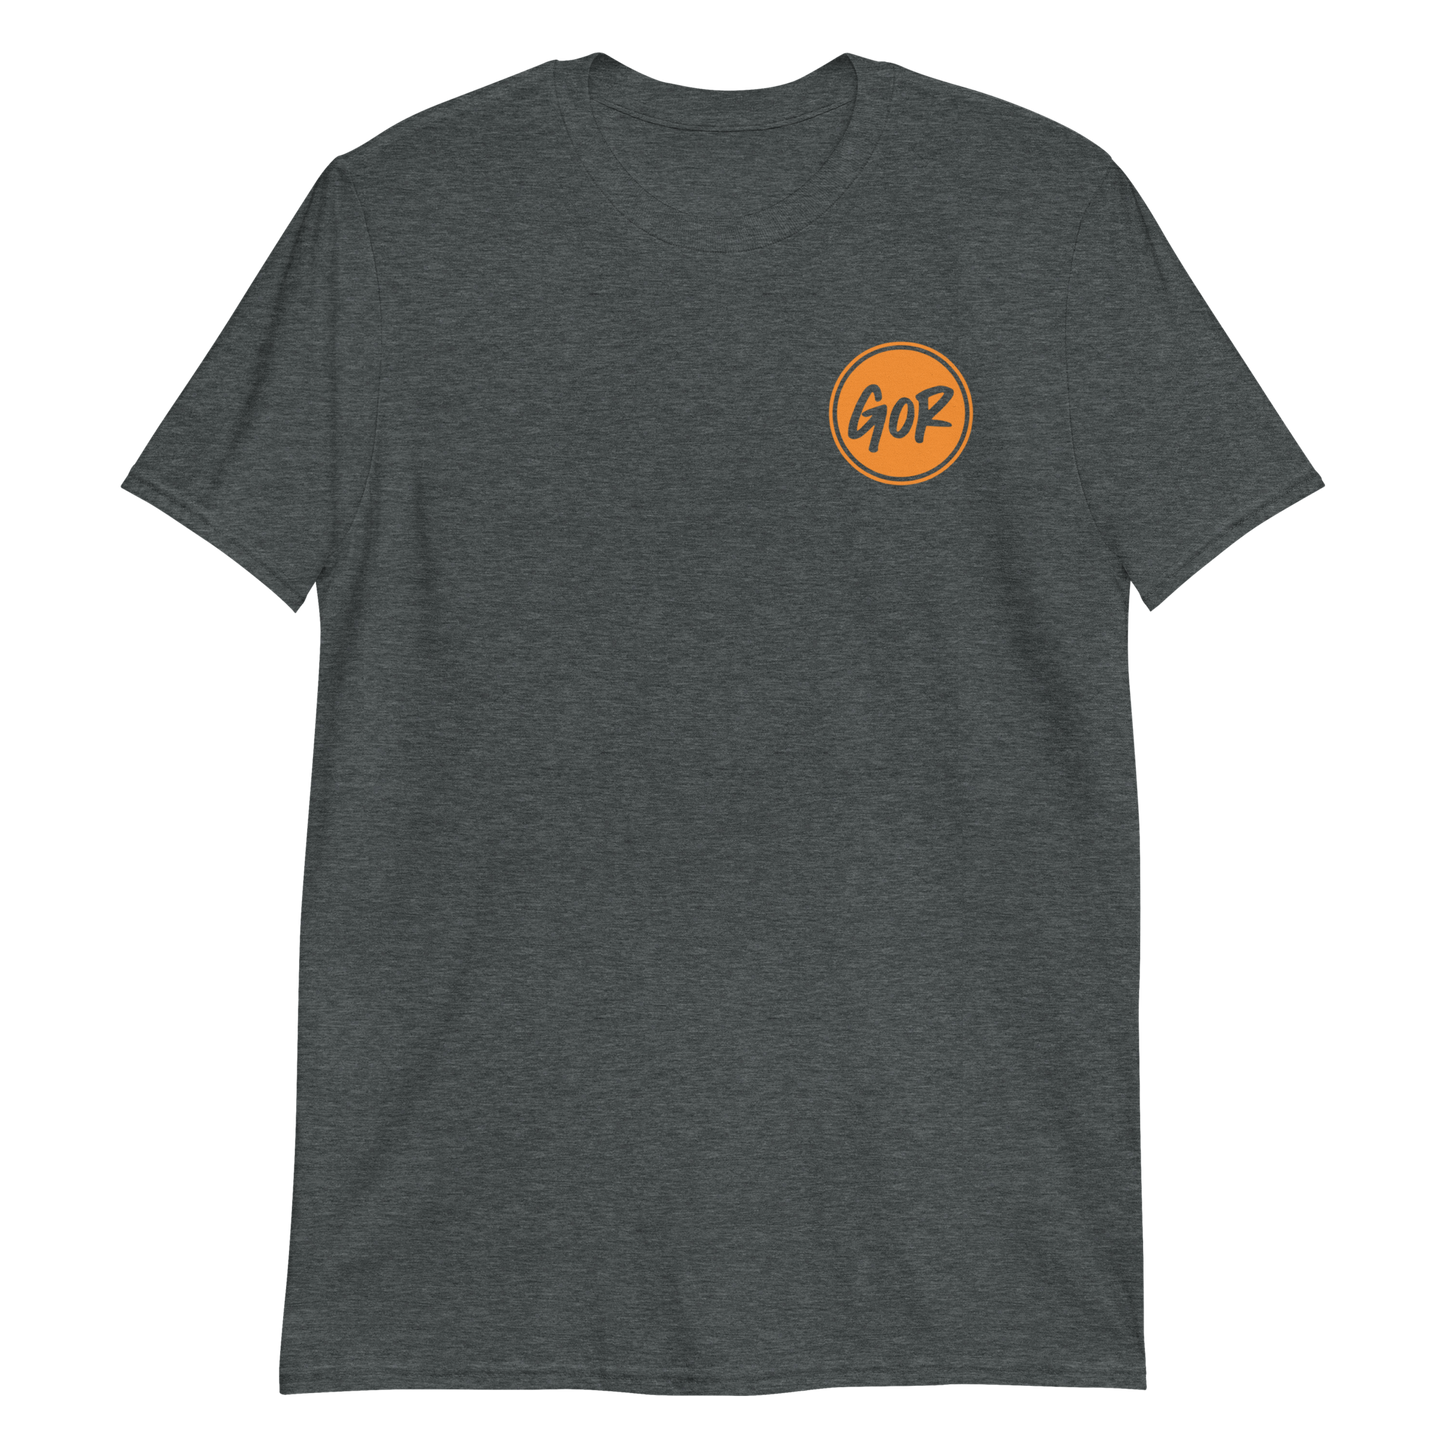 Short-Sleeve Unisex T-Shirt (small icon logo)